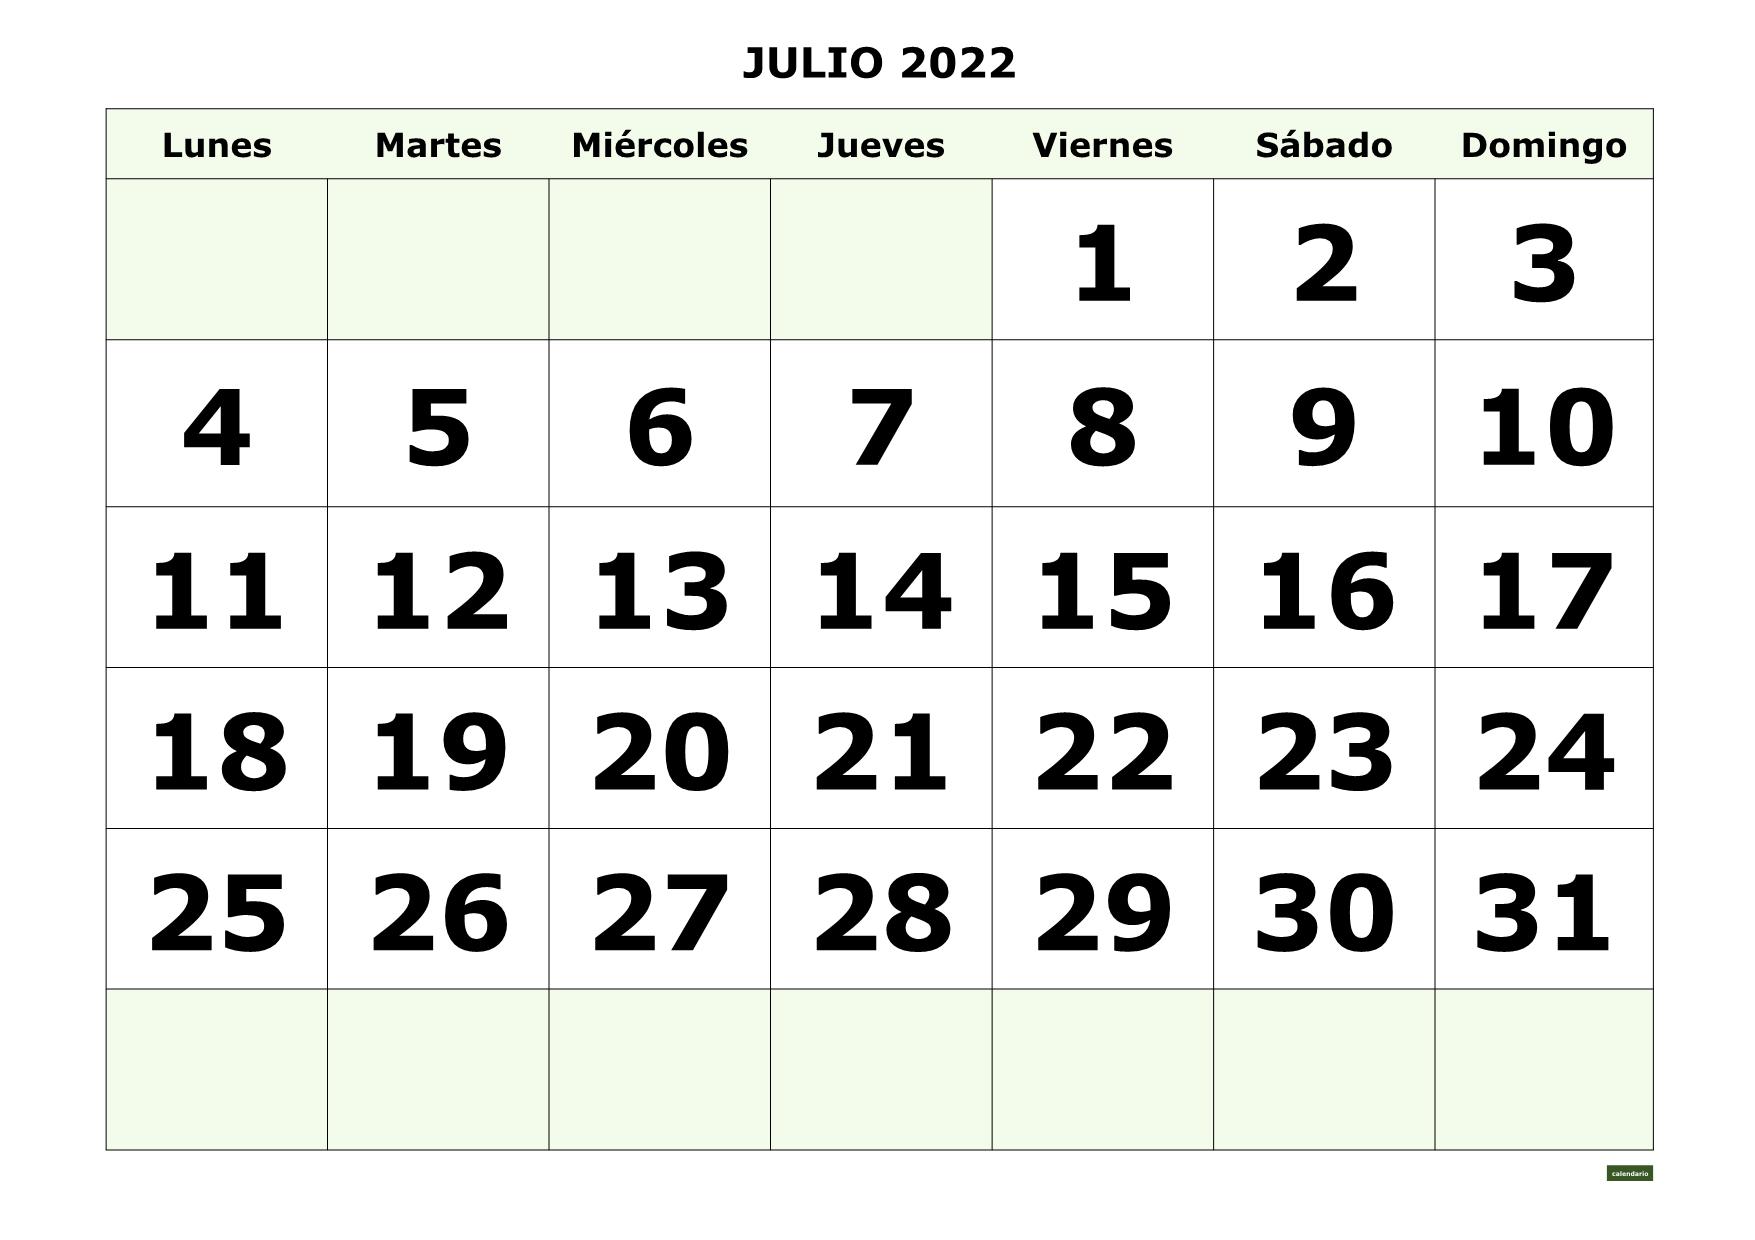 JULIO 2022 con NUMEROS GRANDES